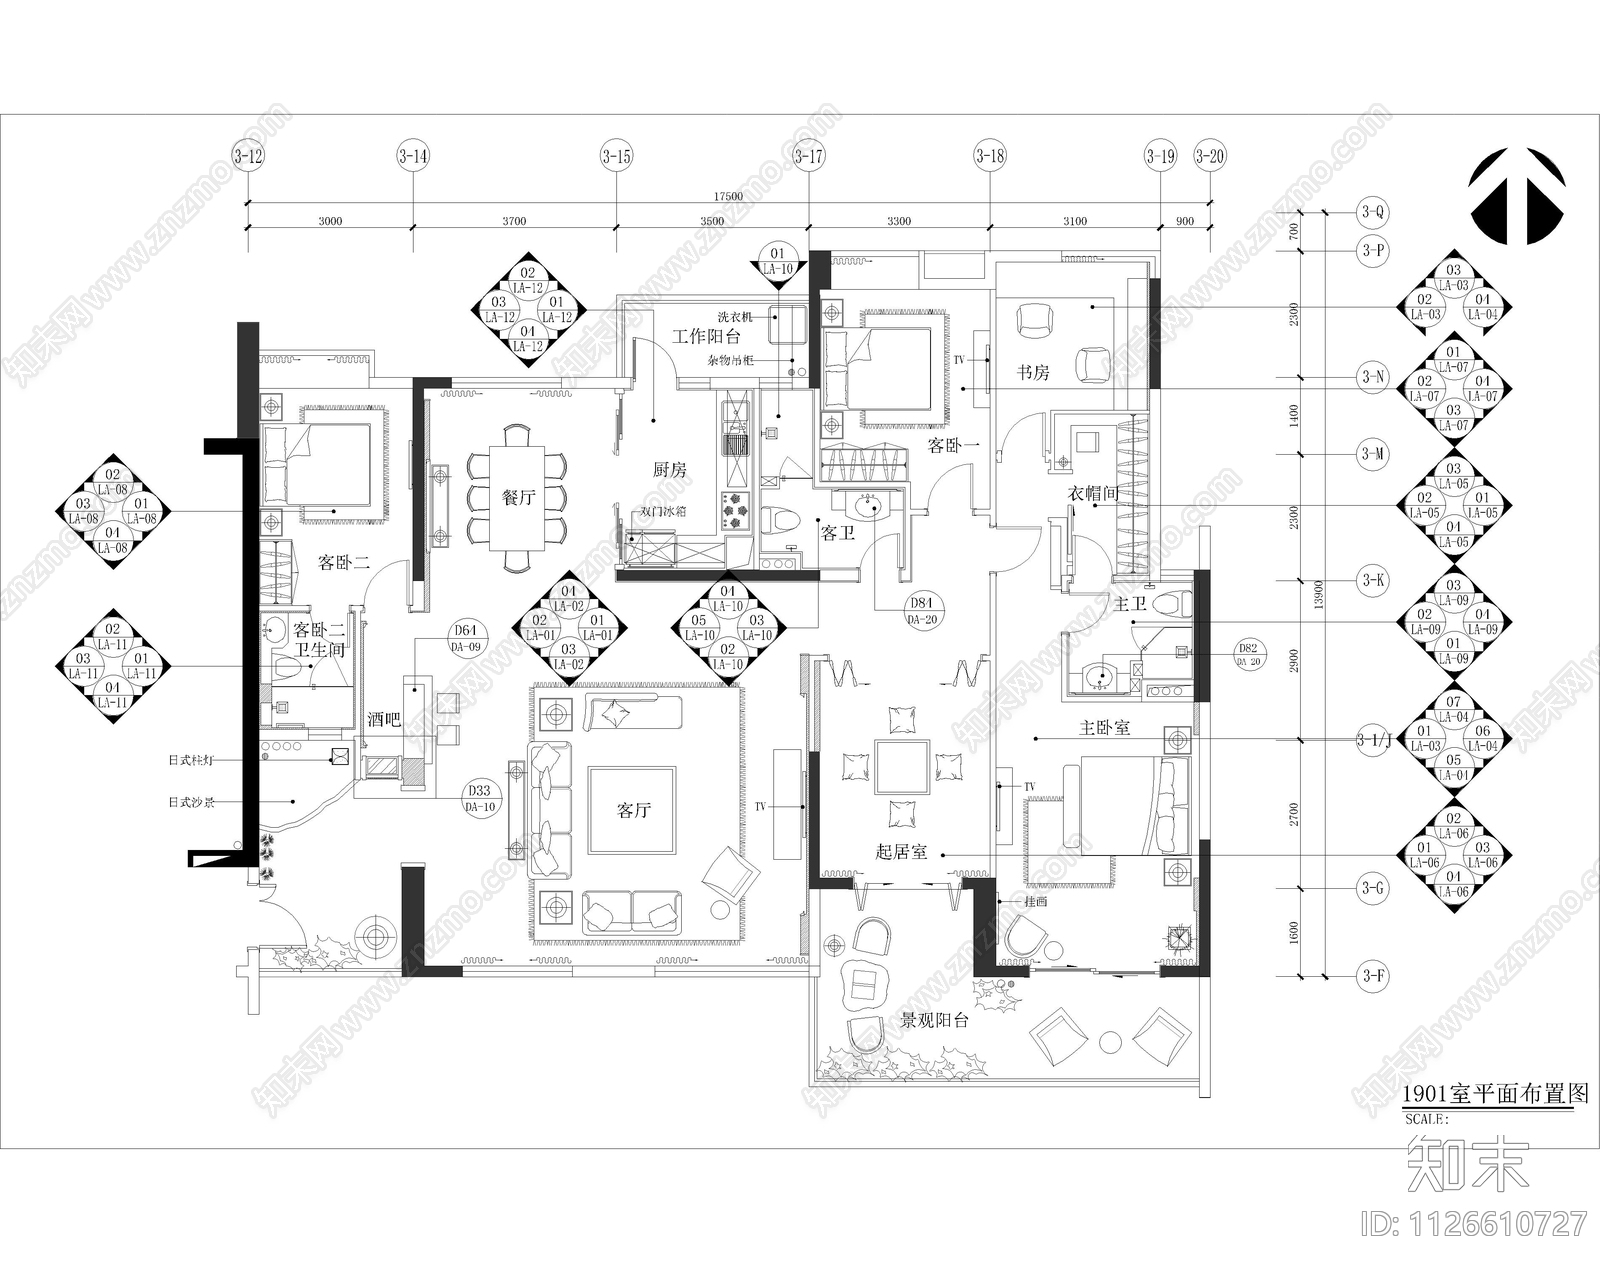 SU样板房住宅透视模型图片_装饰装修_建筑空间-图行天下素材网